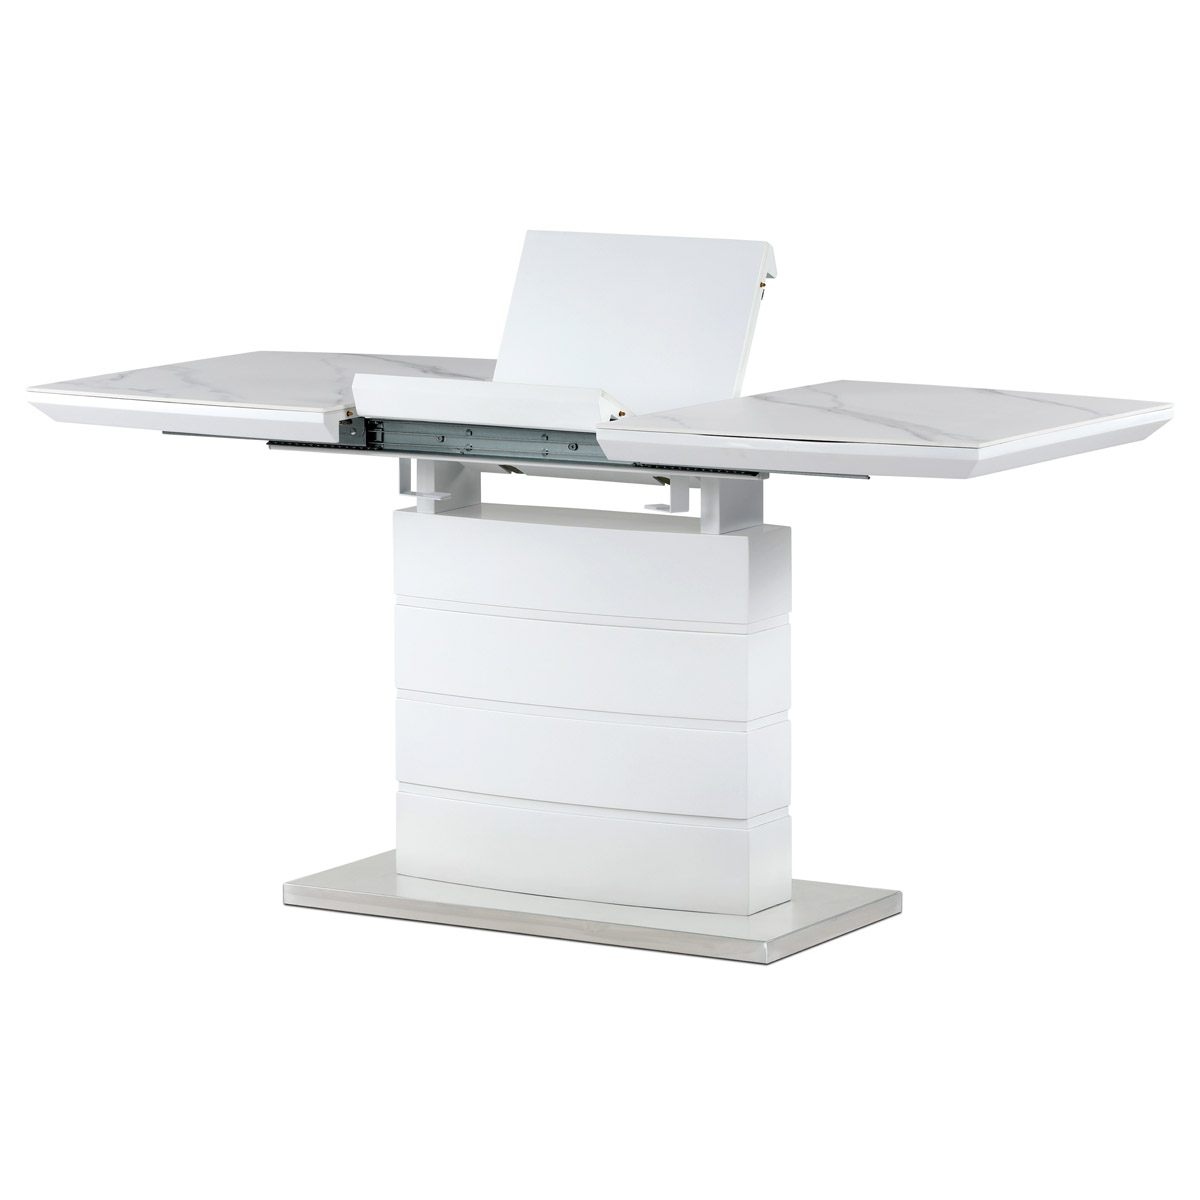 Jídelní stůl 120+40x70 cm, keramická deska bílý mramor, MDF, bílý matný lak - HT-424M WT